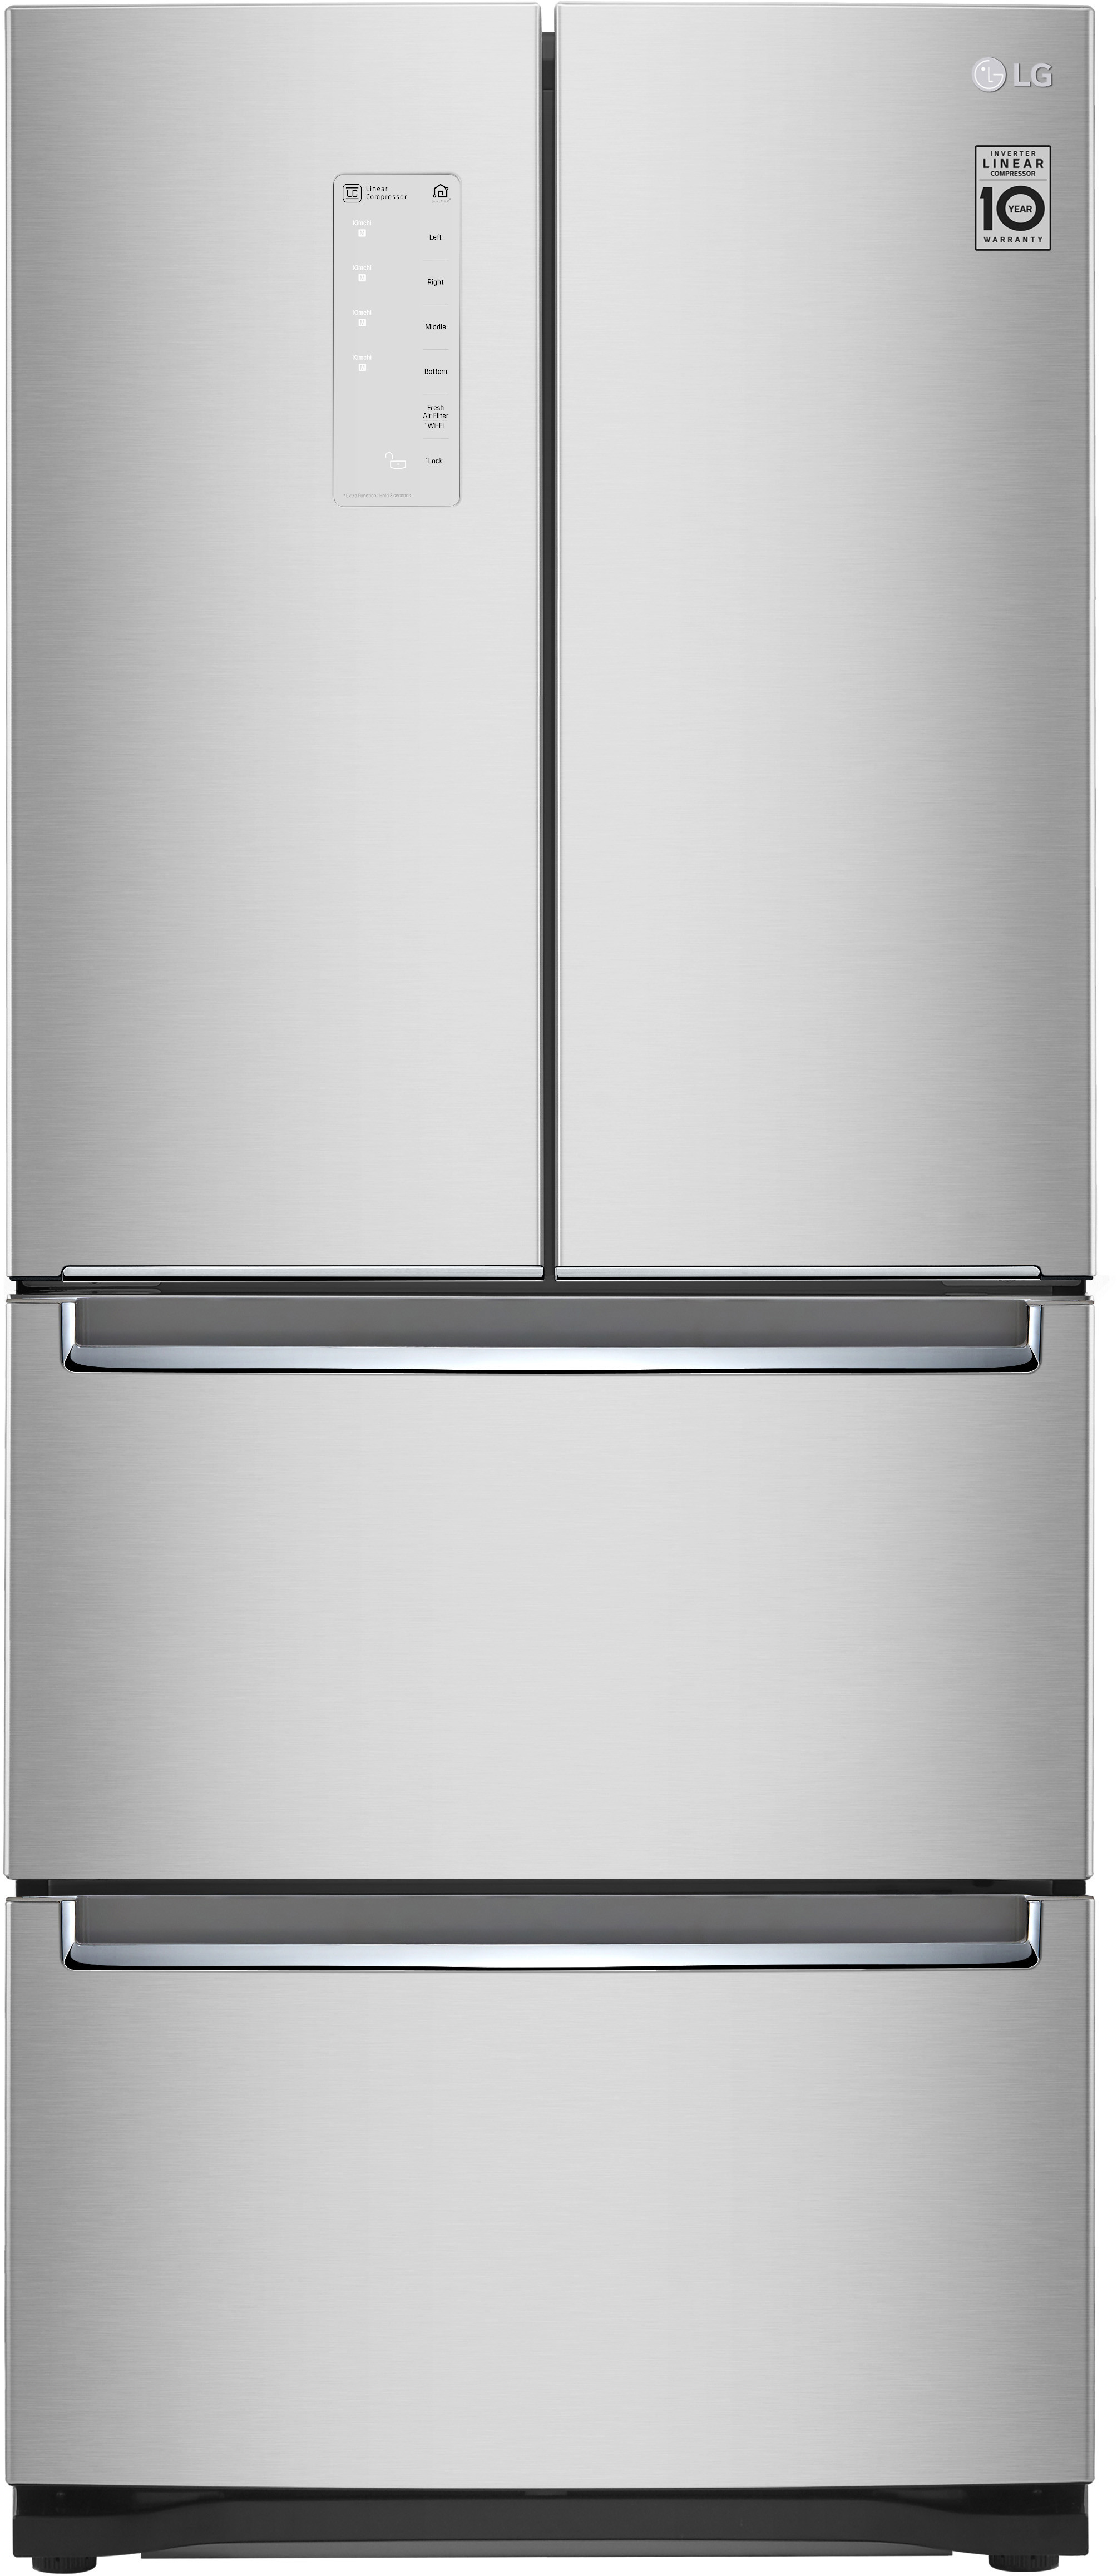 30 Inch 30"" French Door Refrigerator - LG LRKNS1400V